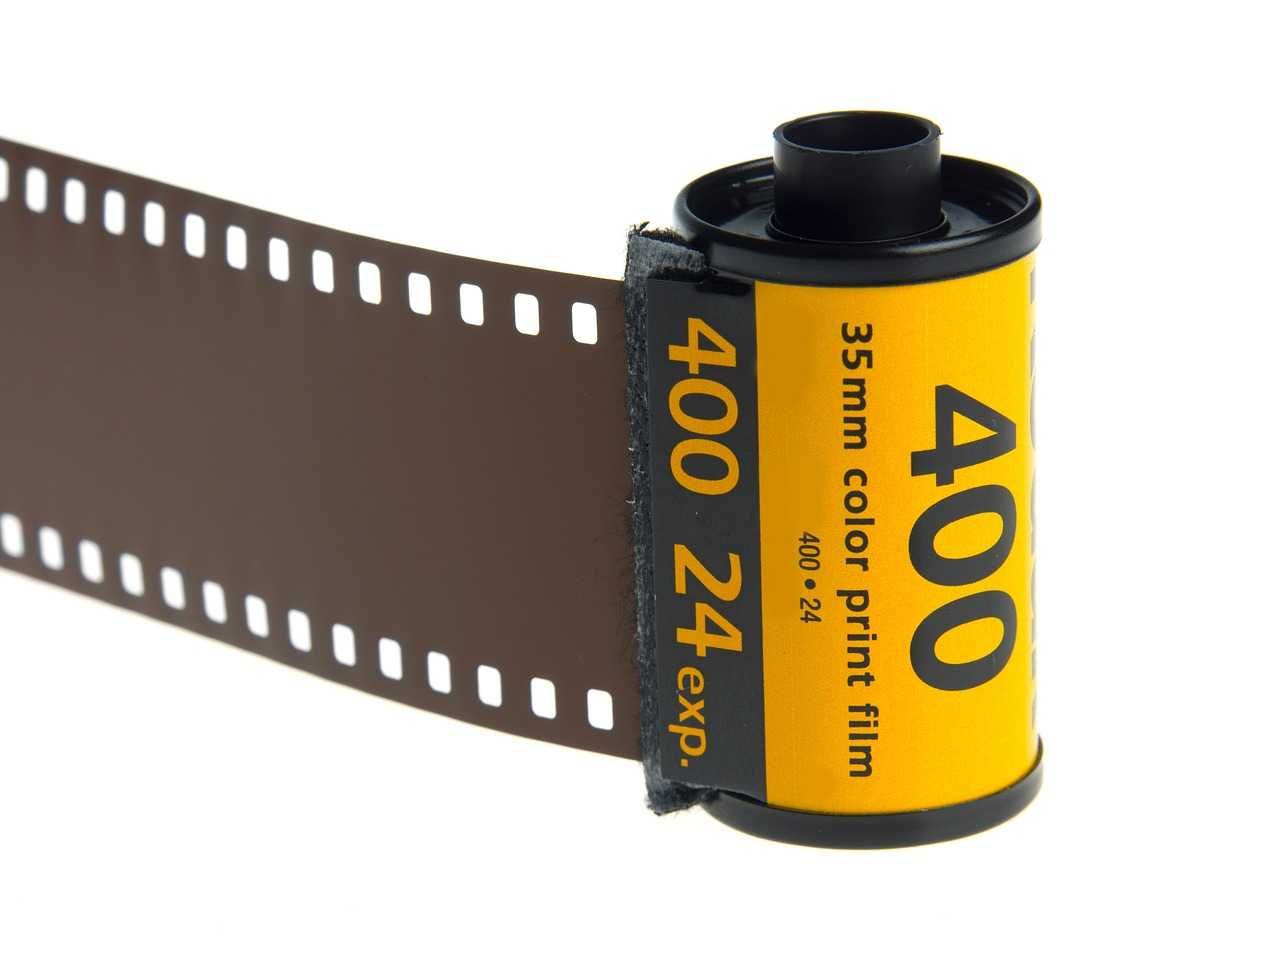 фото плівка Kodak-Max-400-35mm  24 кадрів процес С 41 DxN BWC 24х36